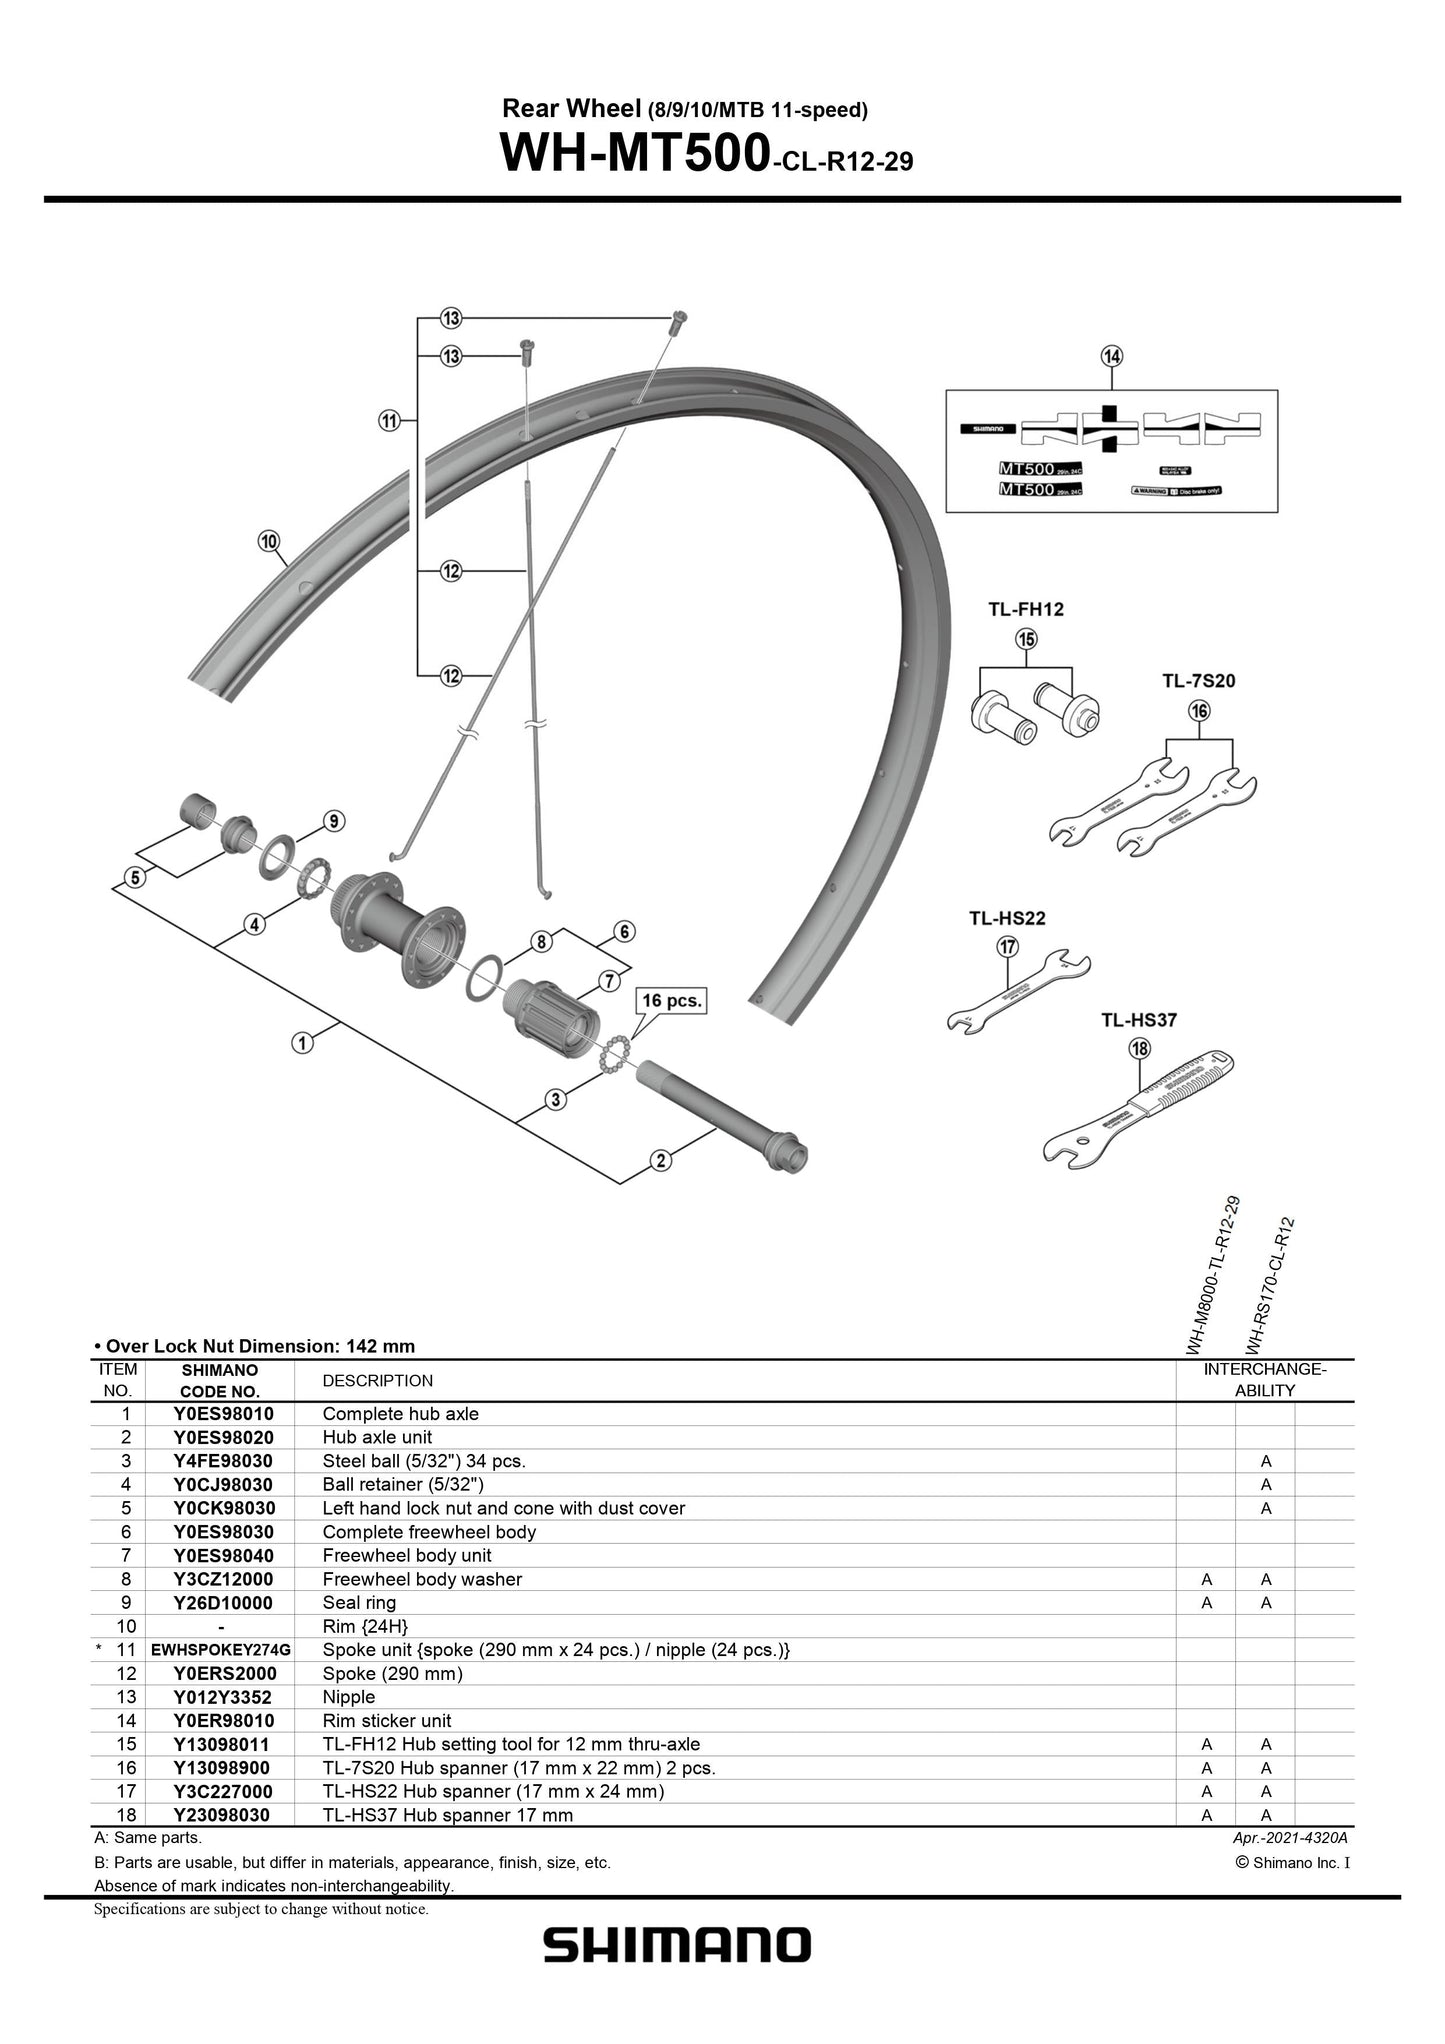 SHIMANO WH-MT500-CL-R12-29 Rear Wheel Complete Hub Axle - 8/9/10/MTB - 11-speed - Y0ES98010-Pit Crew Cycles